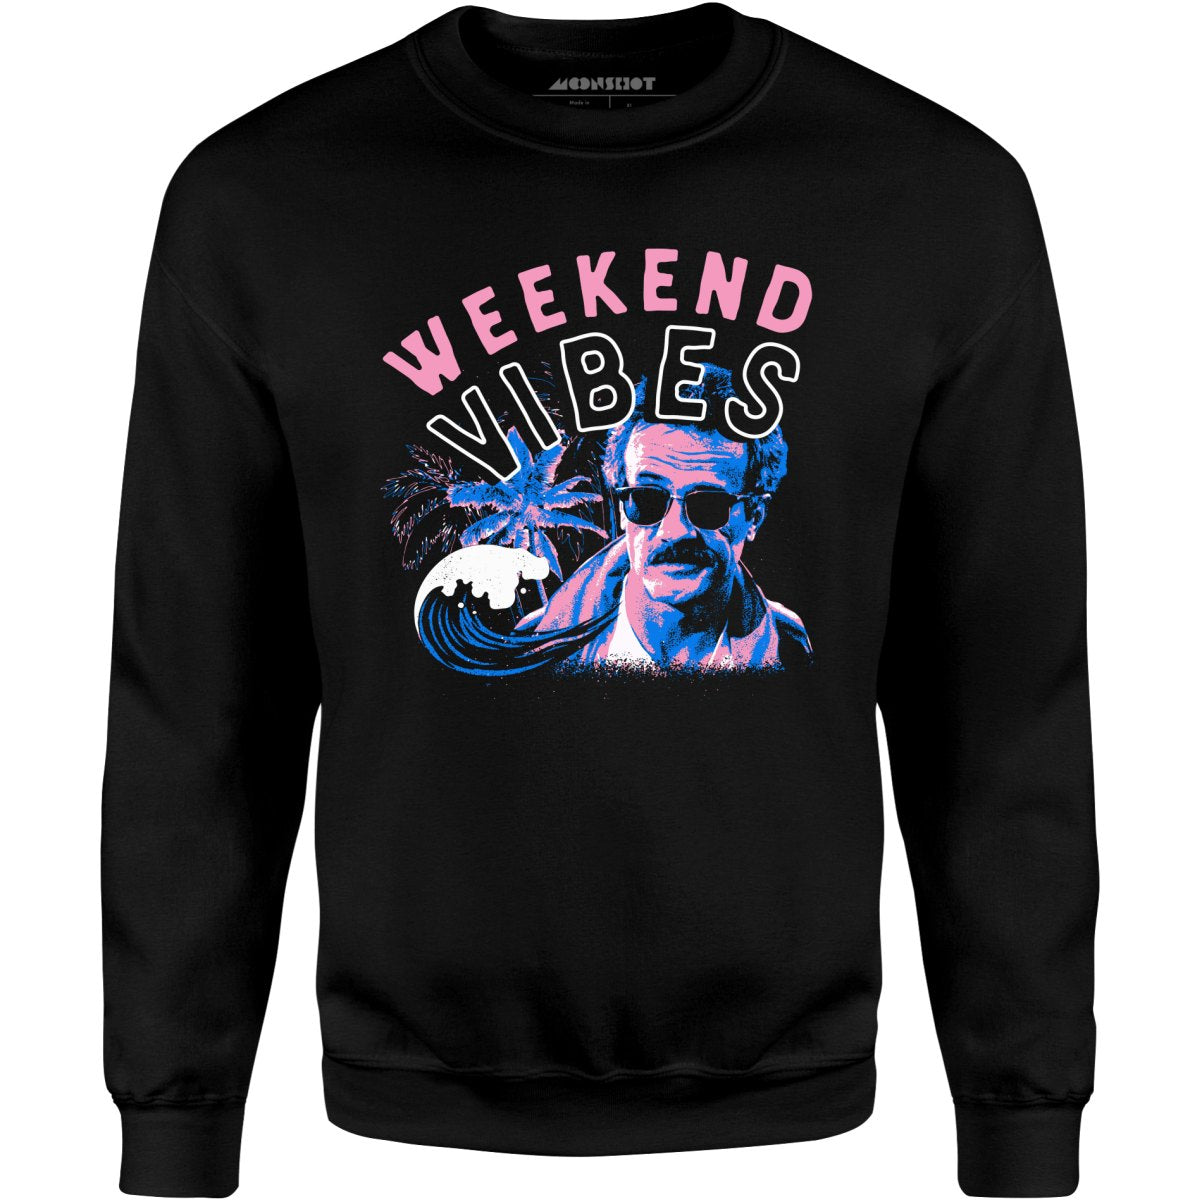 Weekend Vibes - Unisex Sweatshirt